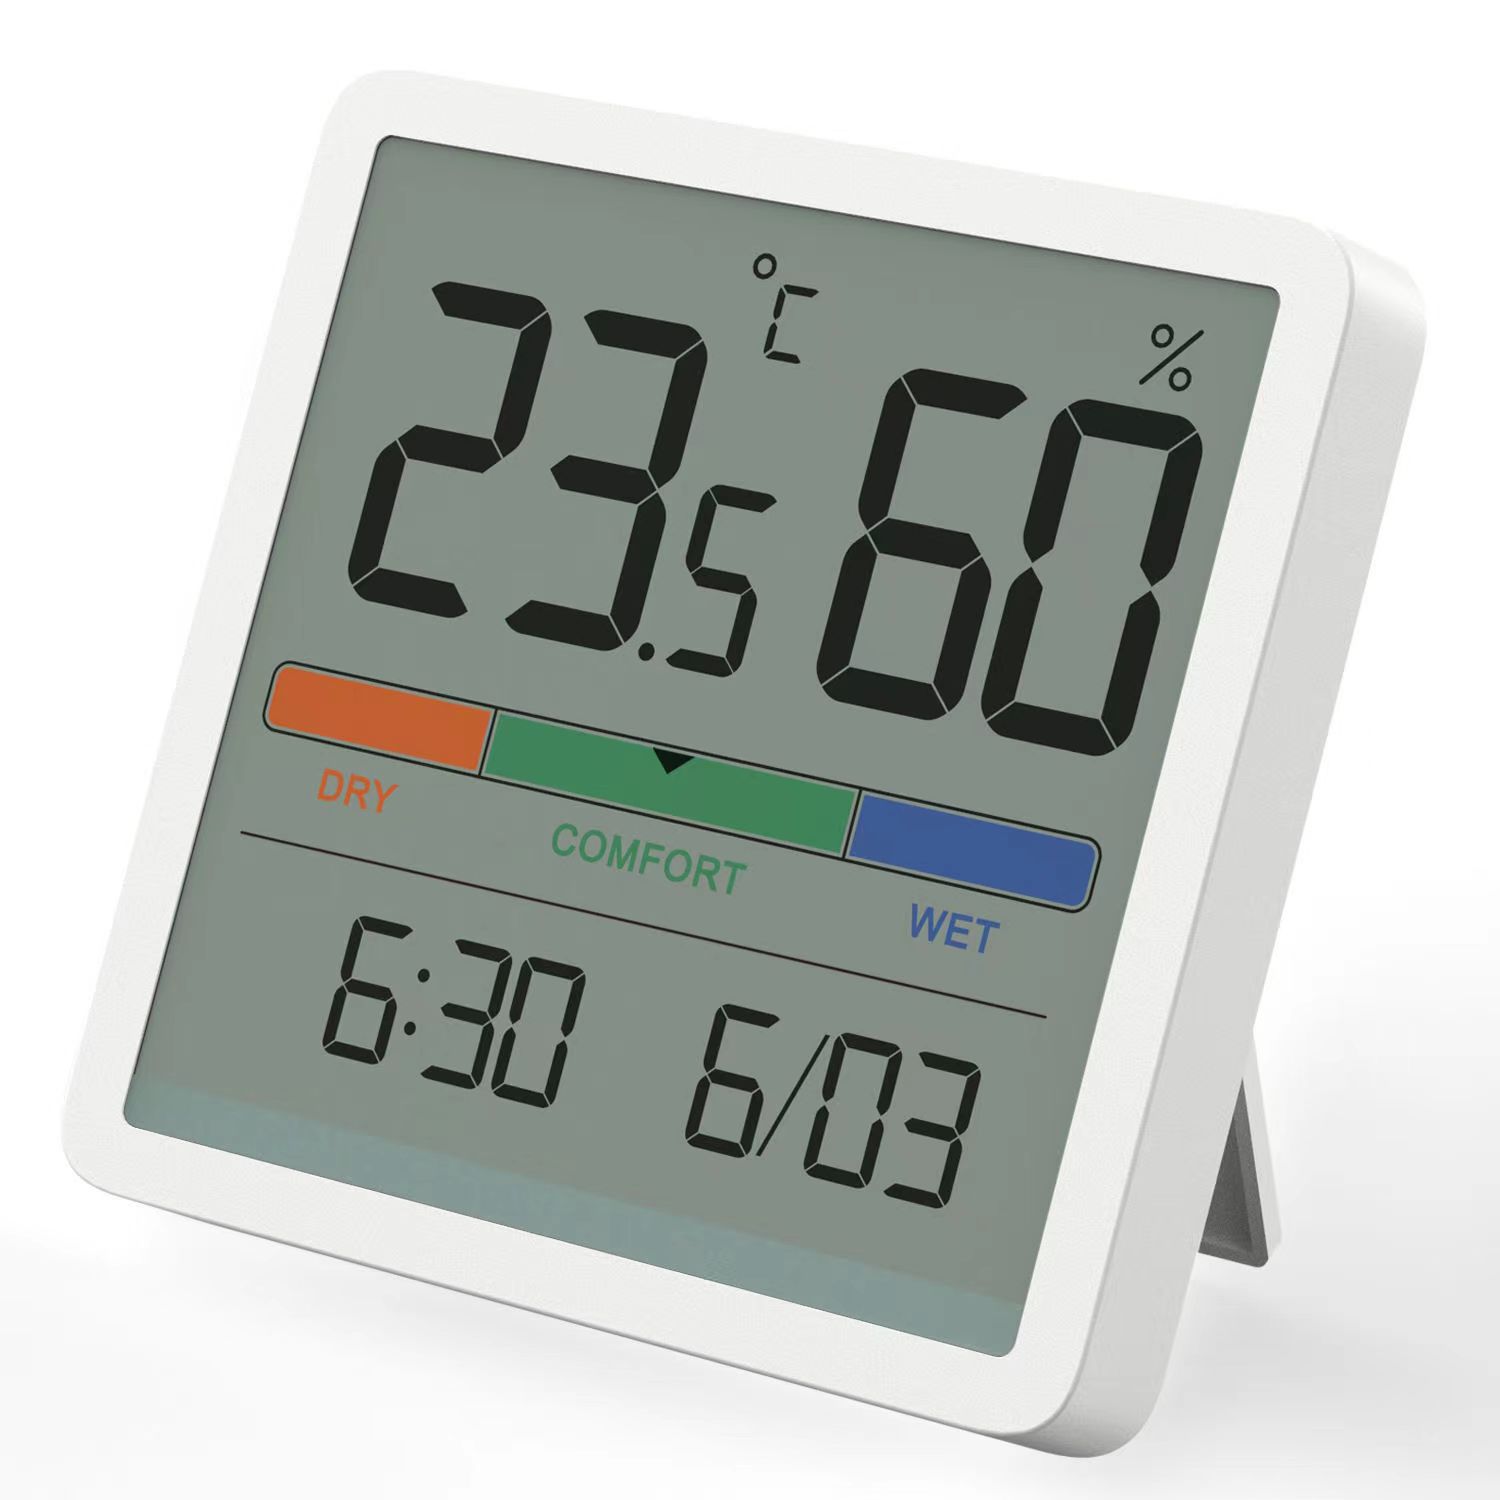 Đồng hồ nhiệt độ và độ ẩm  Mute Màn hình LCD lớn 3,34 inch độ chính xác cao-Hàng hóa nhập khẩu